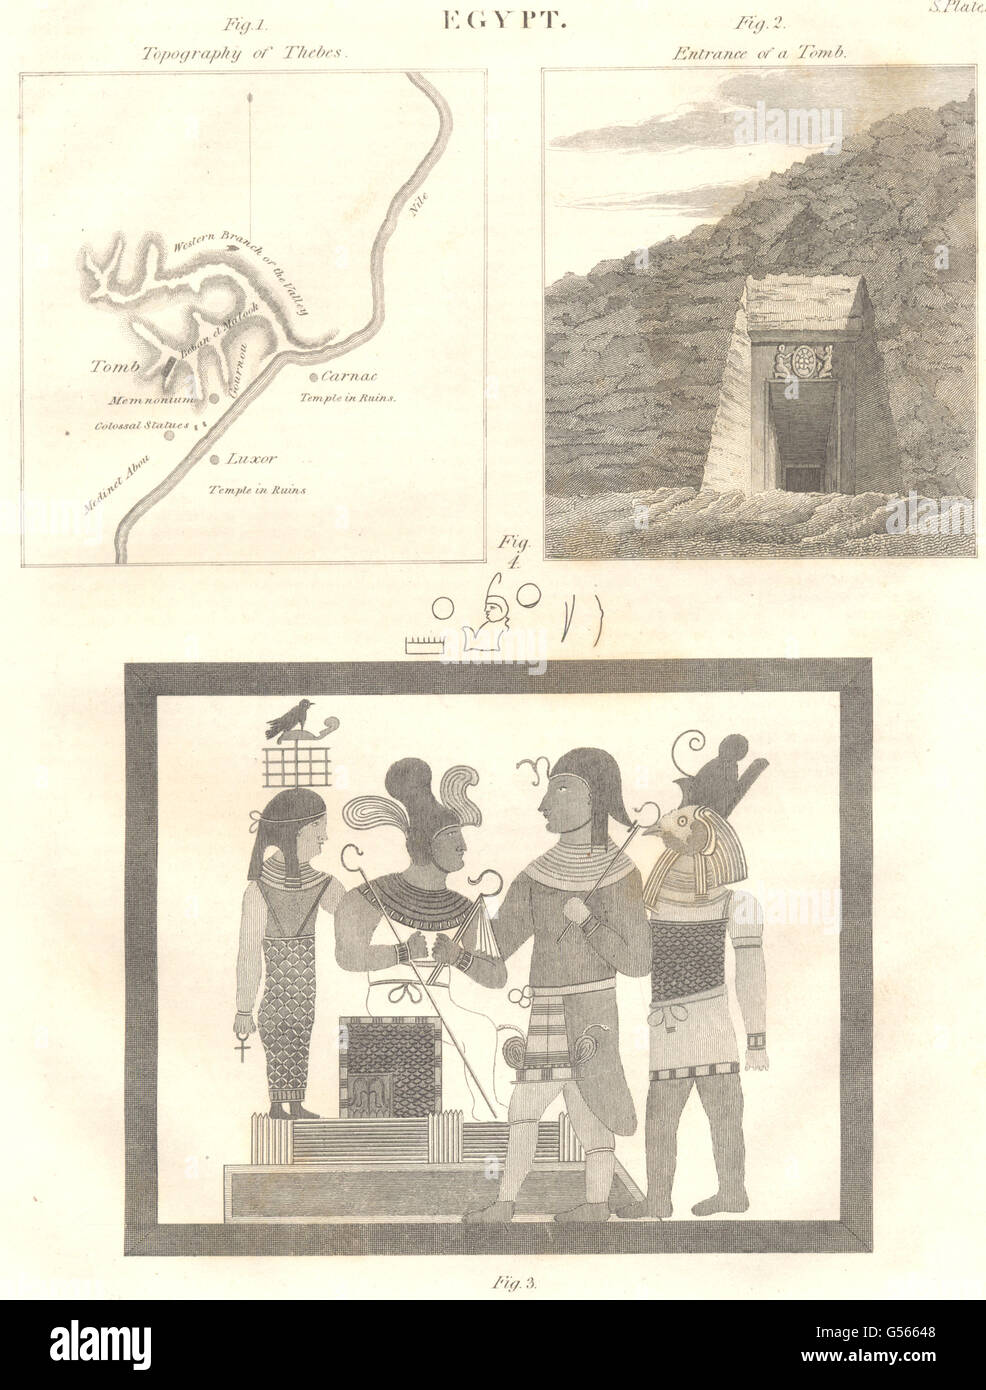 Egitto: Topografia di Tebe. Ingresso di una tomba. (Oxford enciclopedia), 1830 Foto Stock